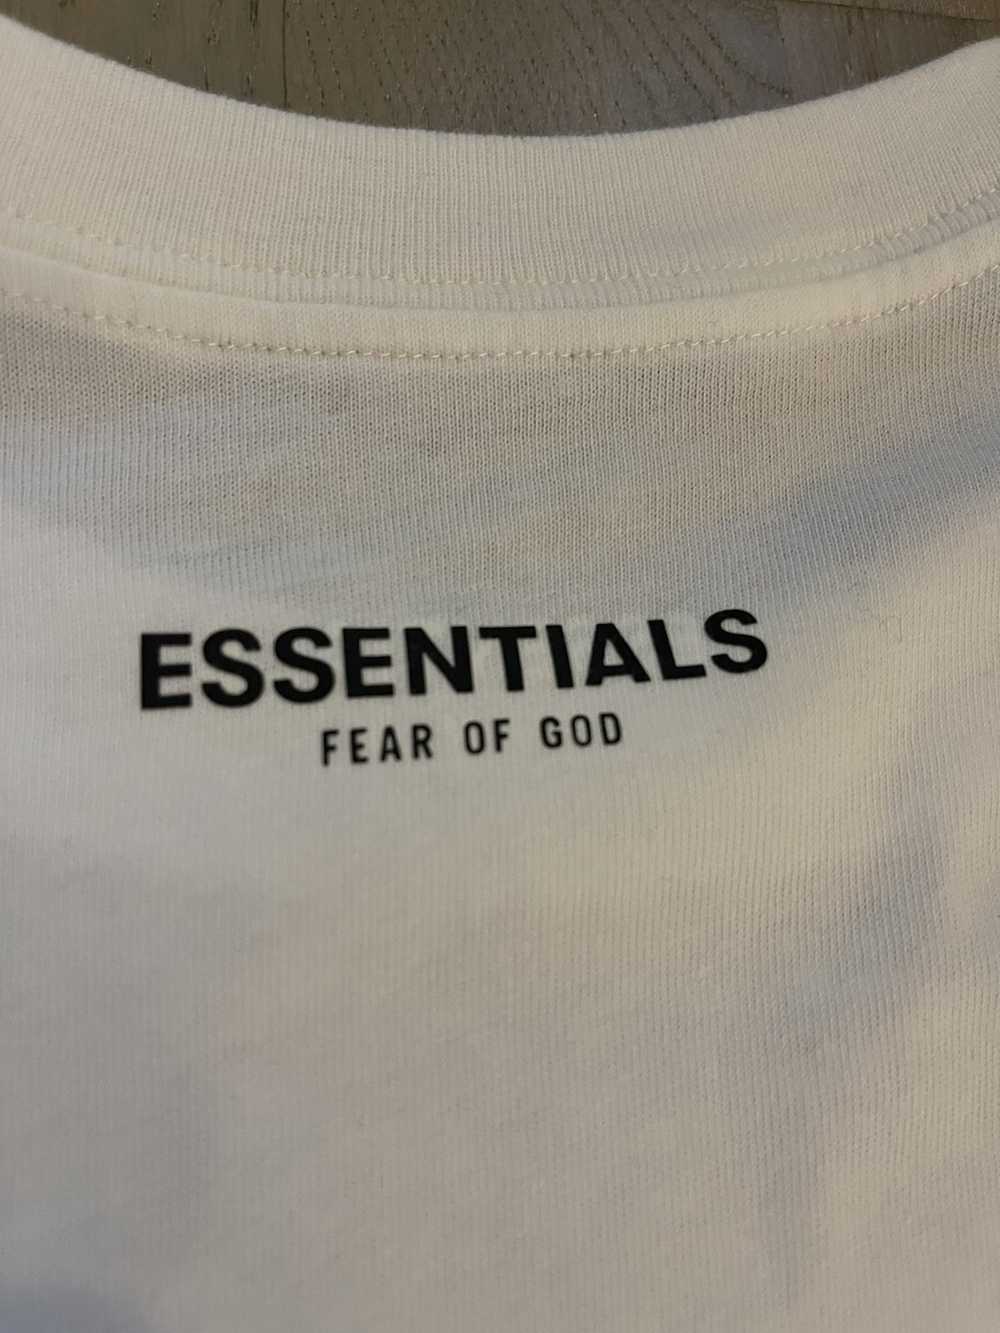 Fear of God FEAR OF GOD ESSENTIALS tshirt see siz… - image 1